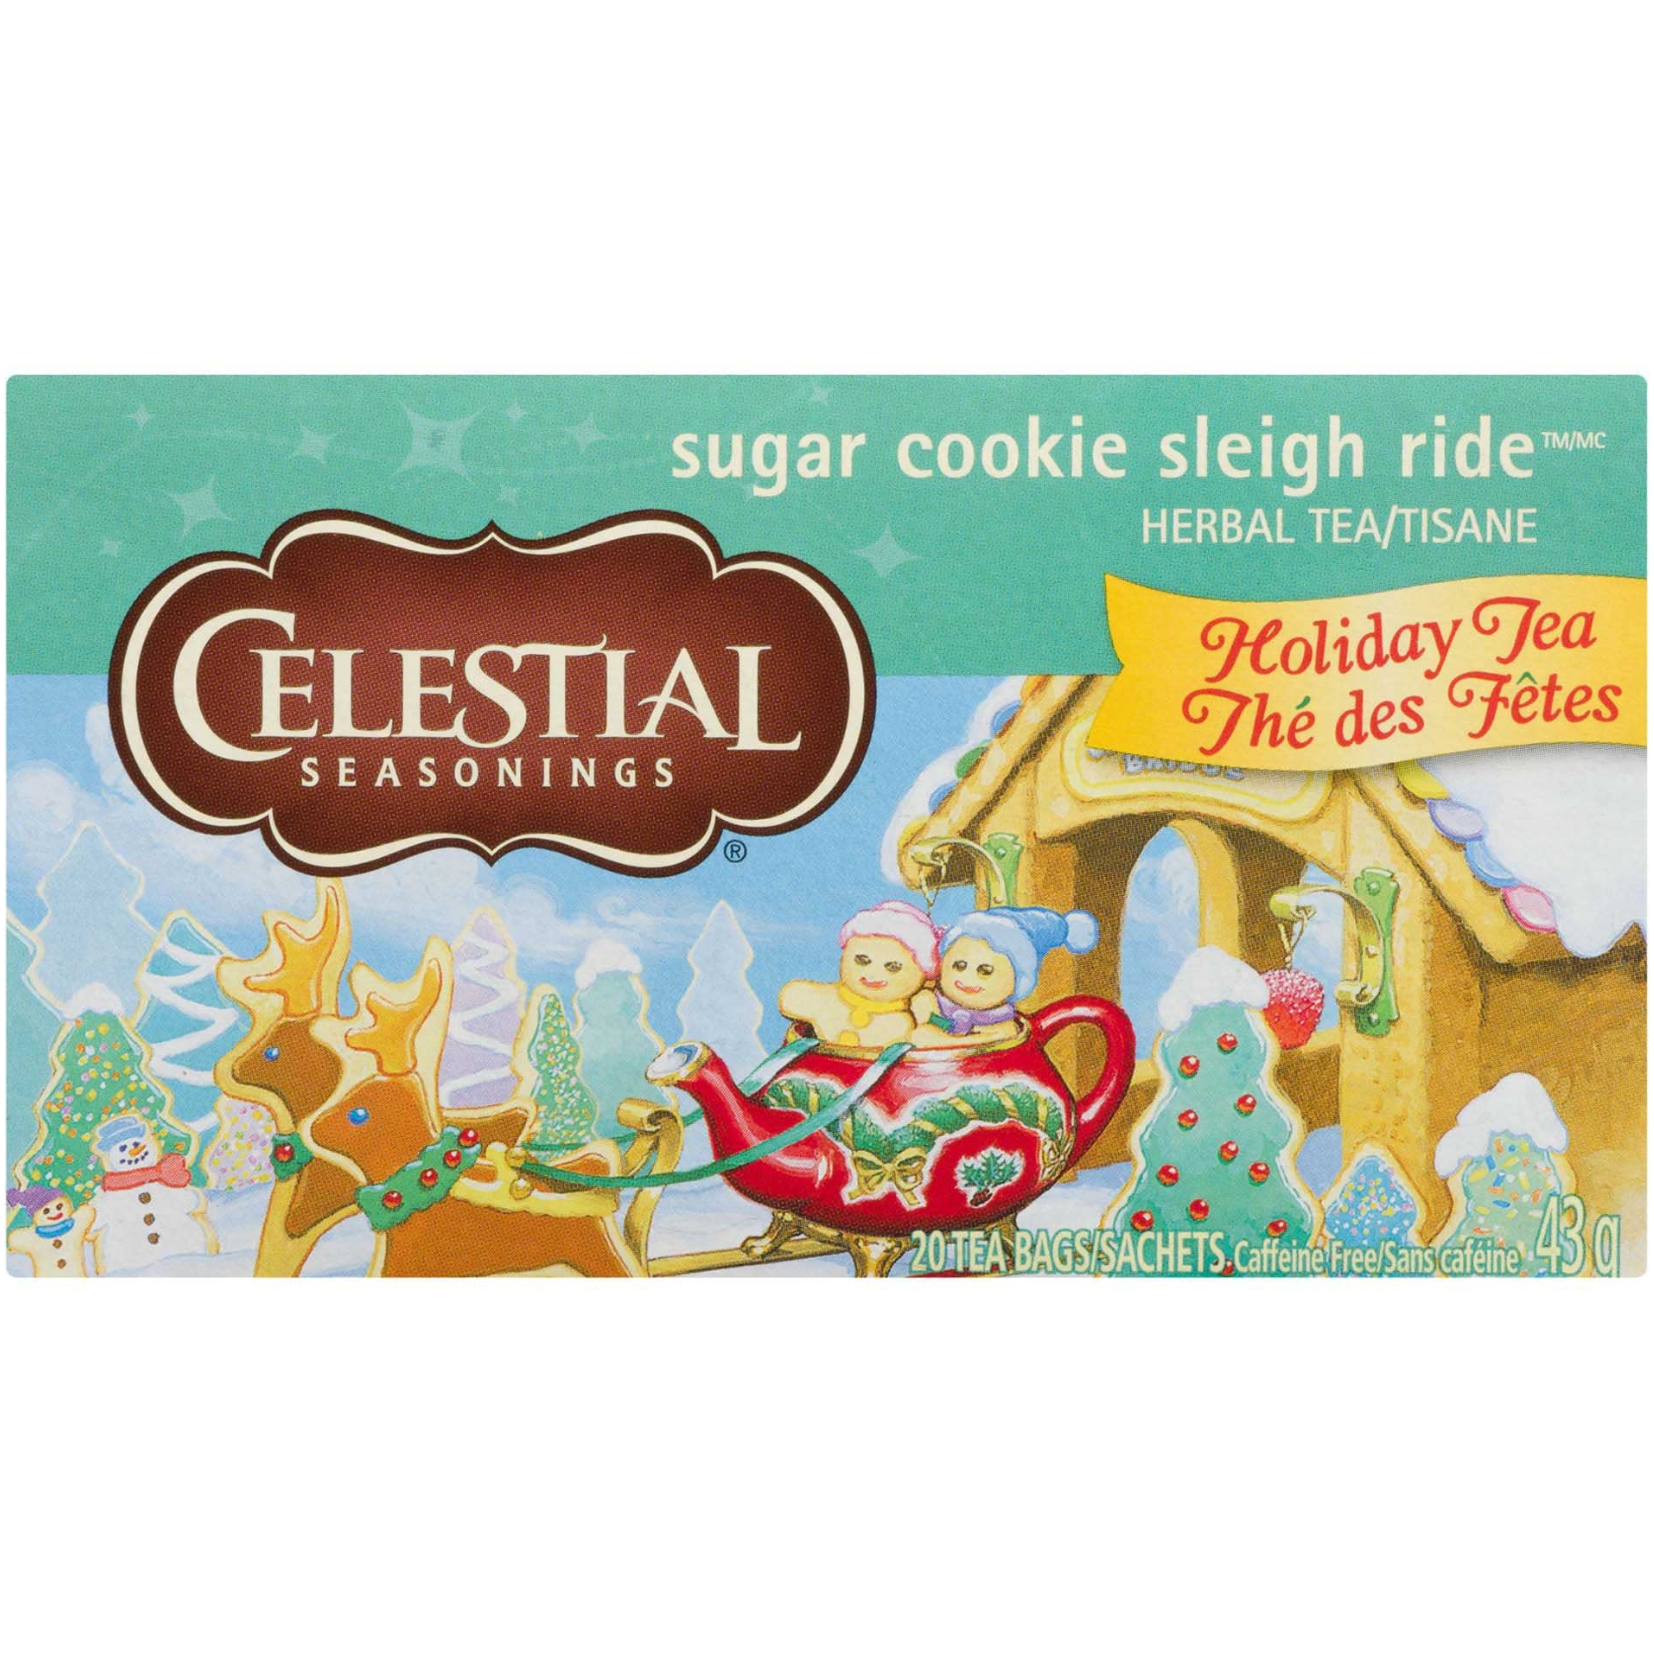 Celestial Seasonings Sugar Cookie Sleigh Ride Tea 43g